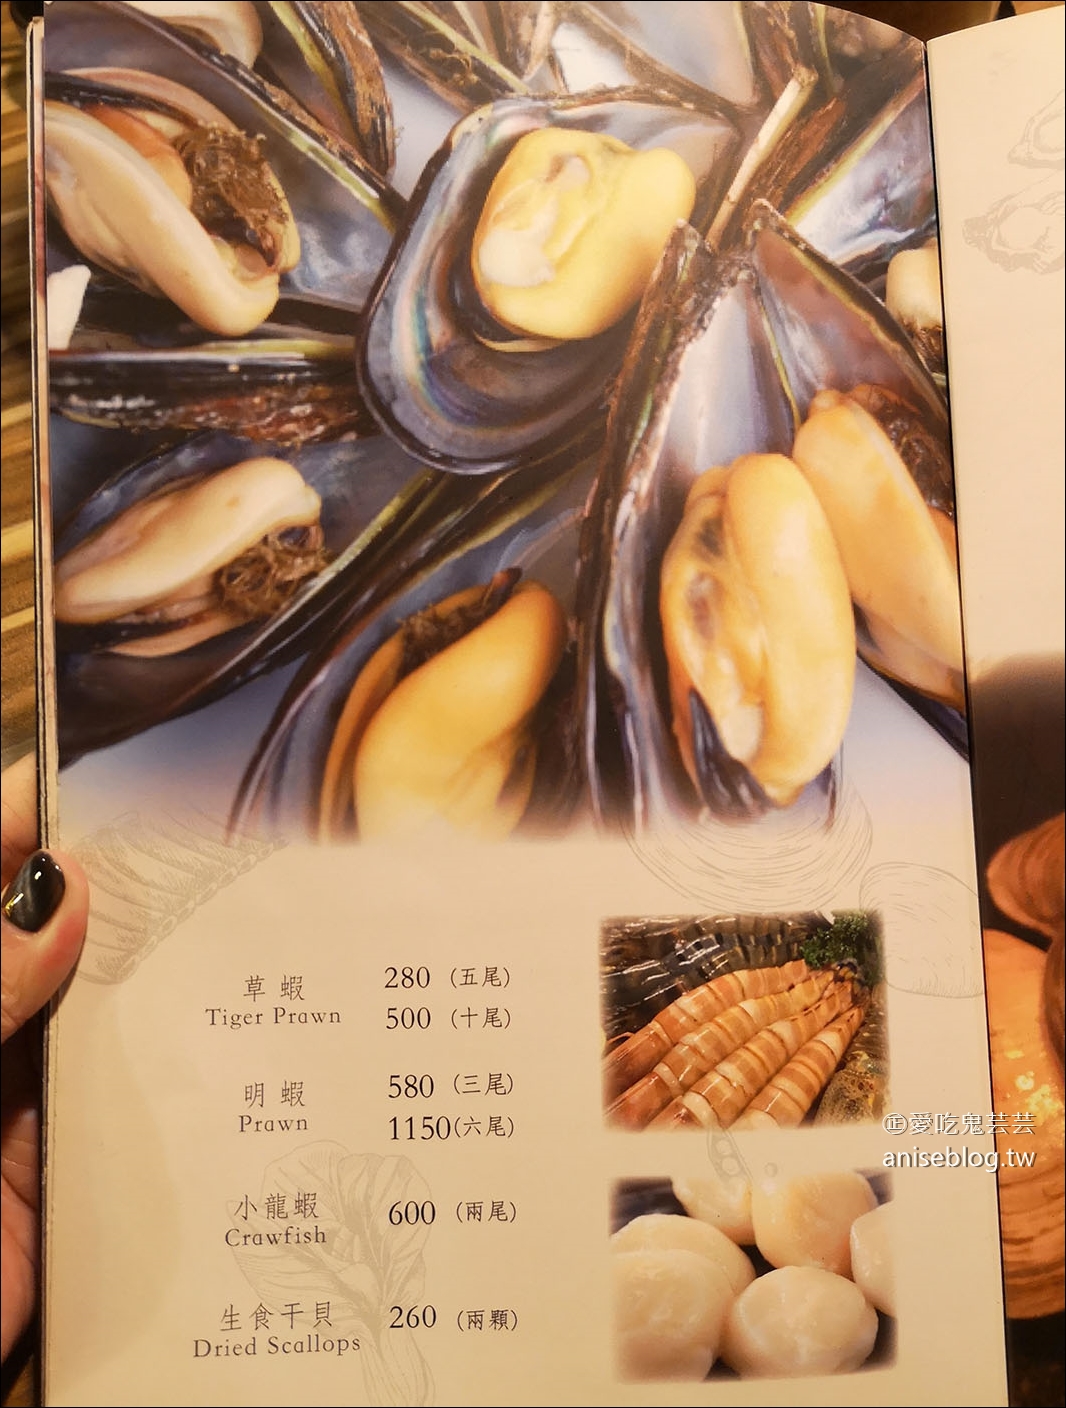 極蜆鍋物，蛤罵滿滿、食材新鮮的鮮美火鍋店 (文末有完整菜單)